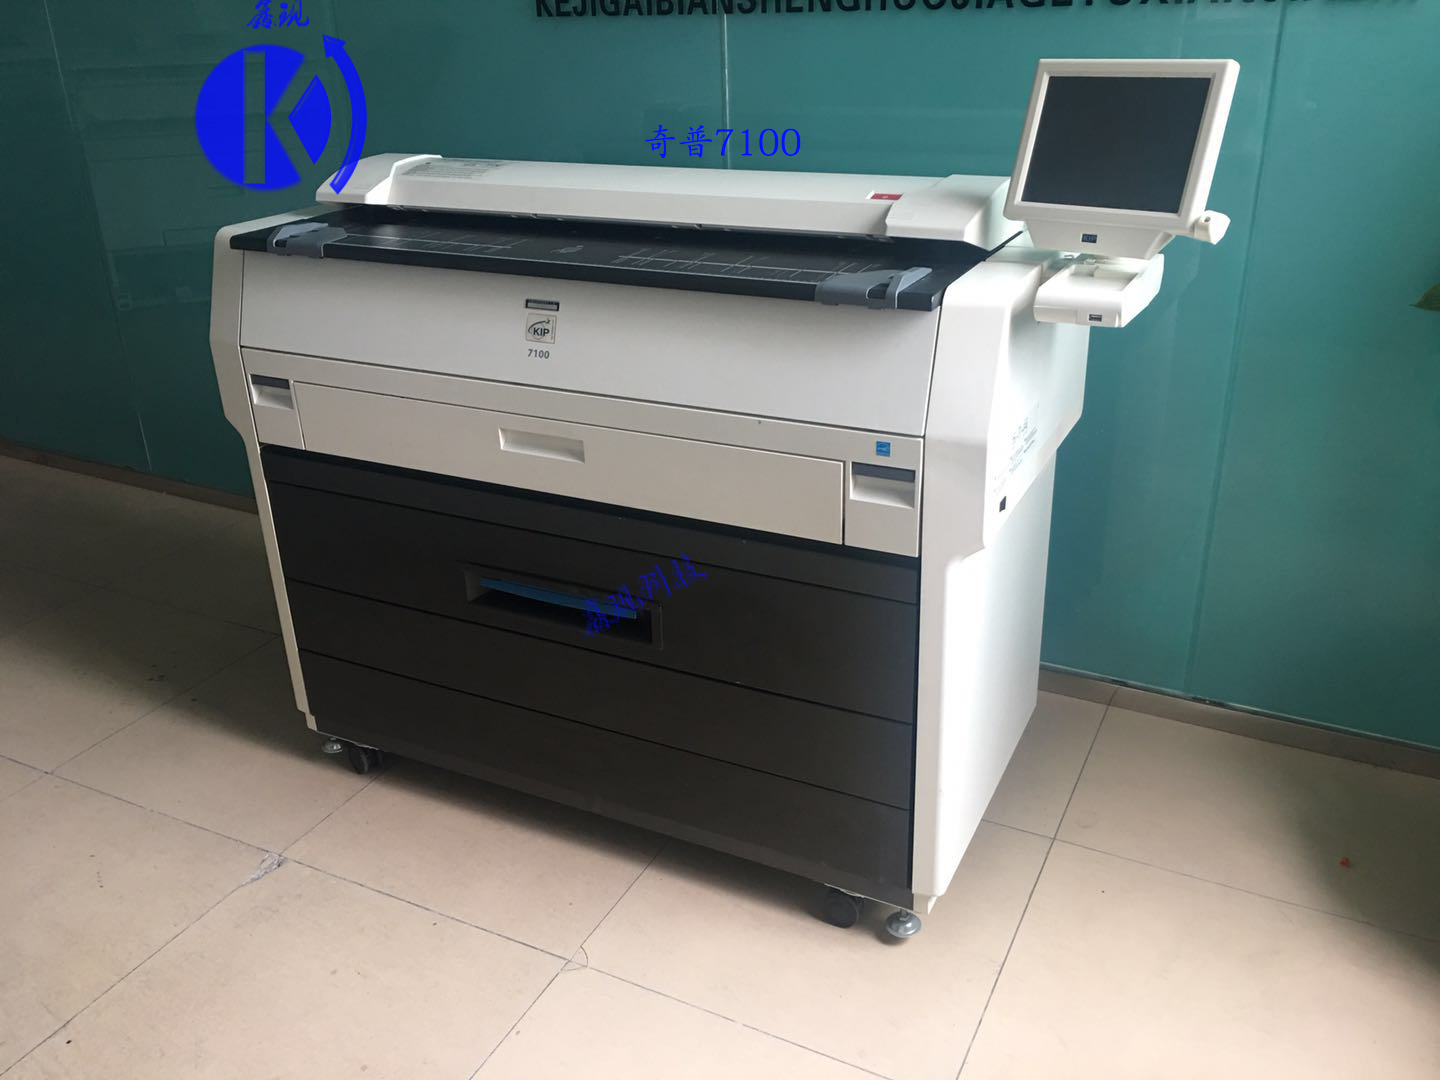 奇普7100二手数码工程复印机激光蓝图晒图机、奇普kip7100激光蓝图打印机数码打印机图片